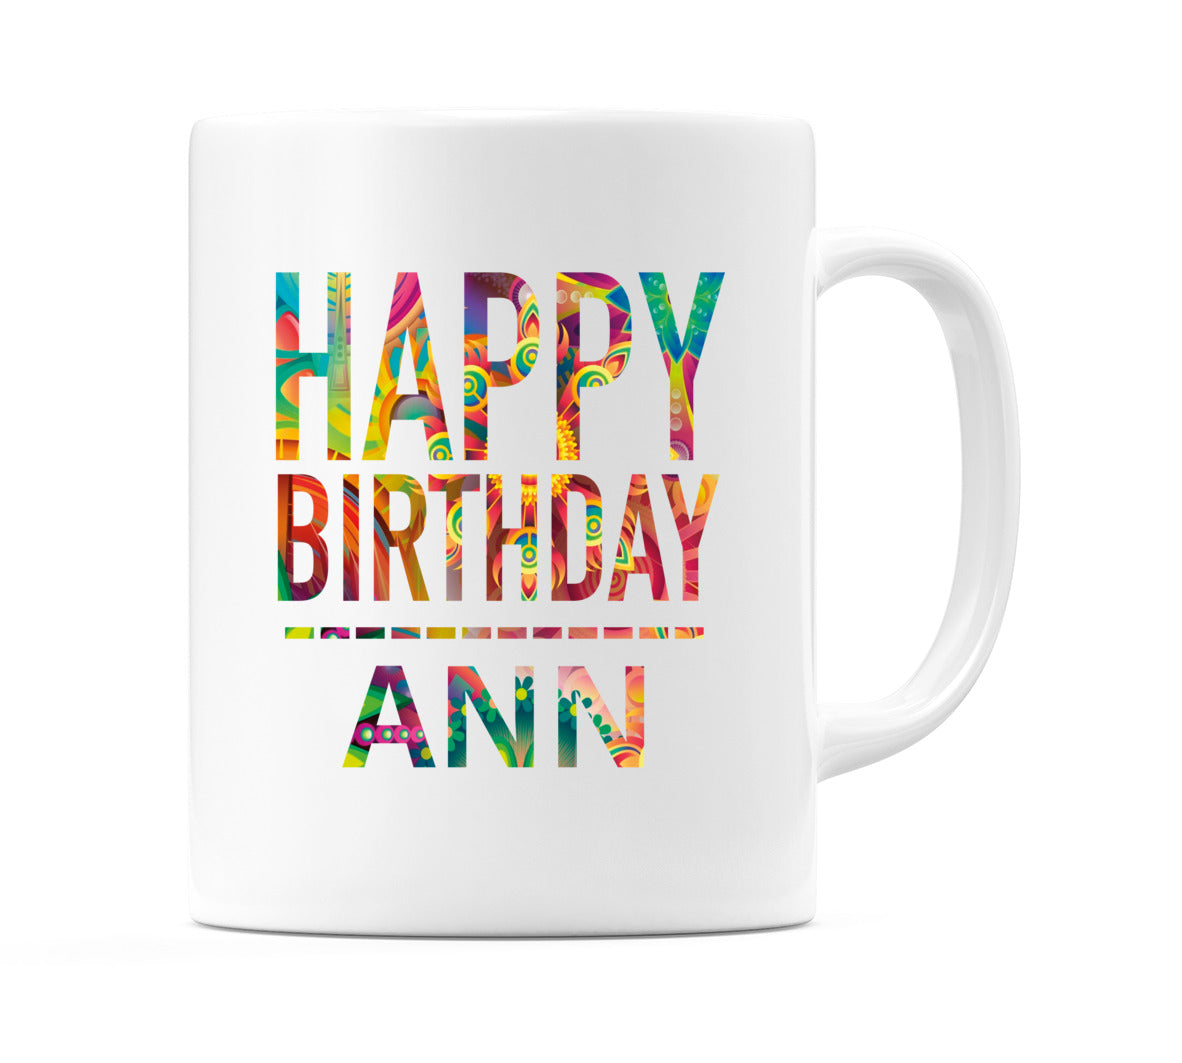 Happy Birthday Ann (Tie Dye Effect) Mug Cup by WeDoMugs